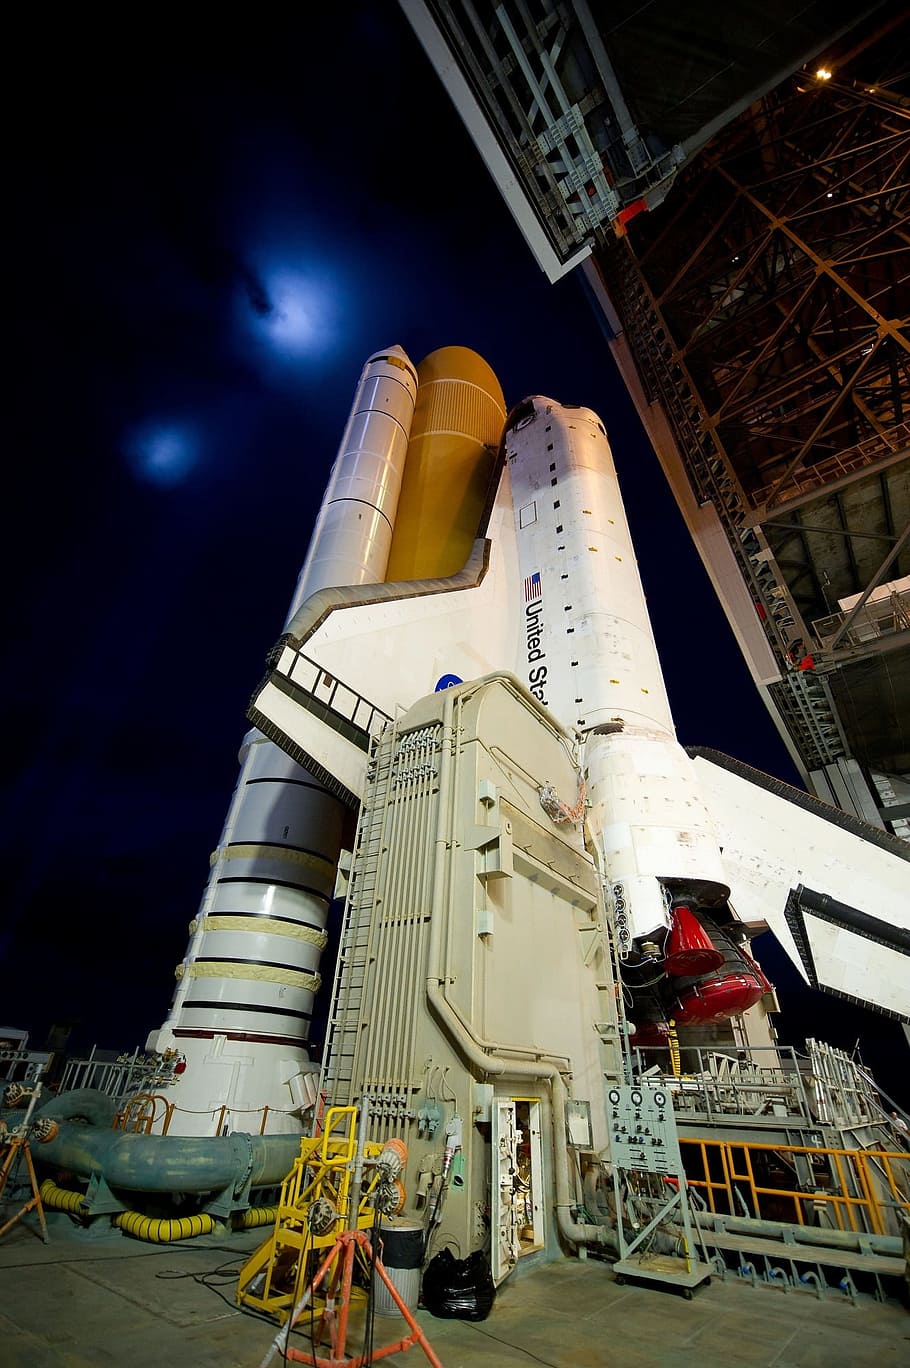 white, black, rocket, inside, building, atlantis space shuttle, rollout, launch pad, pre-launch, astronaut